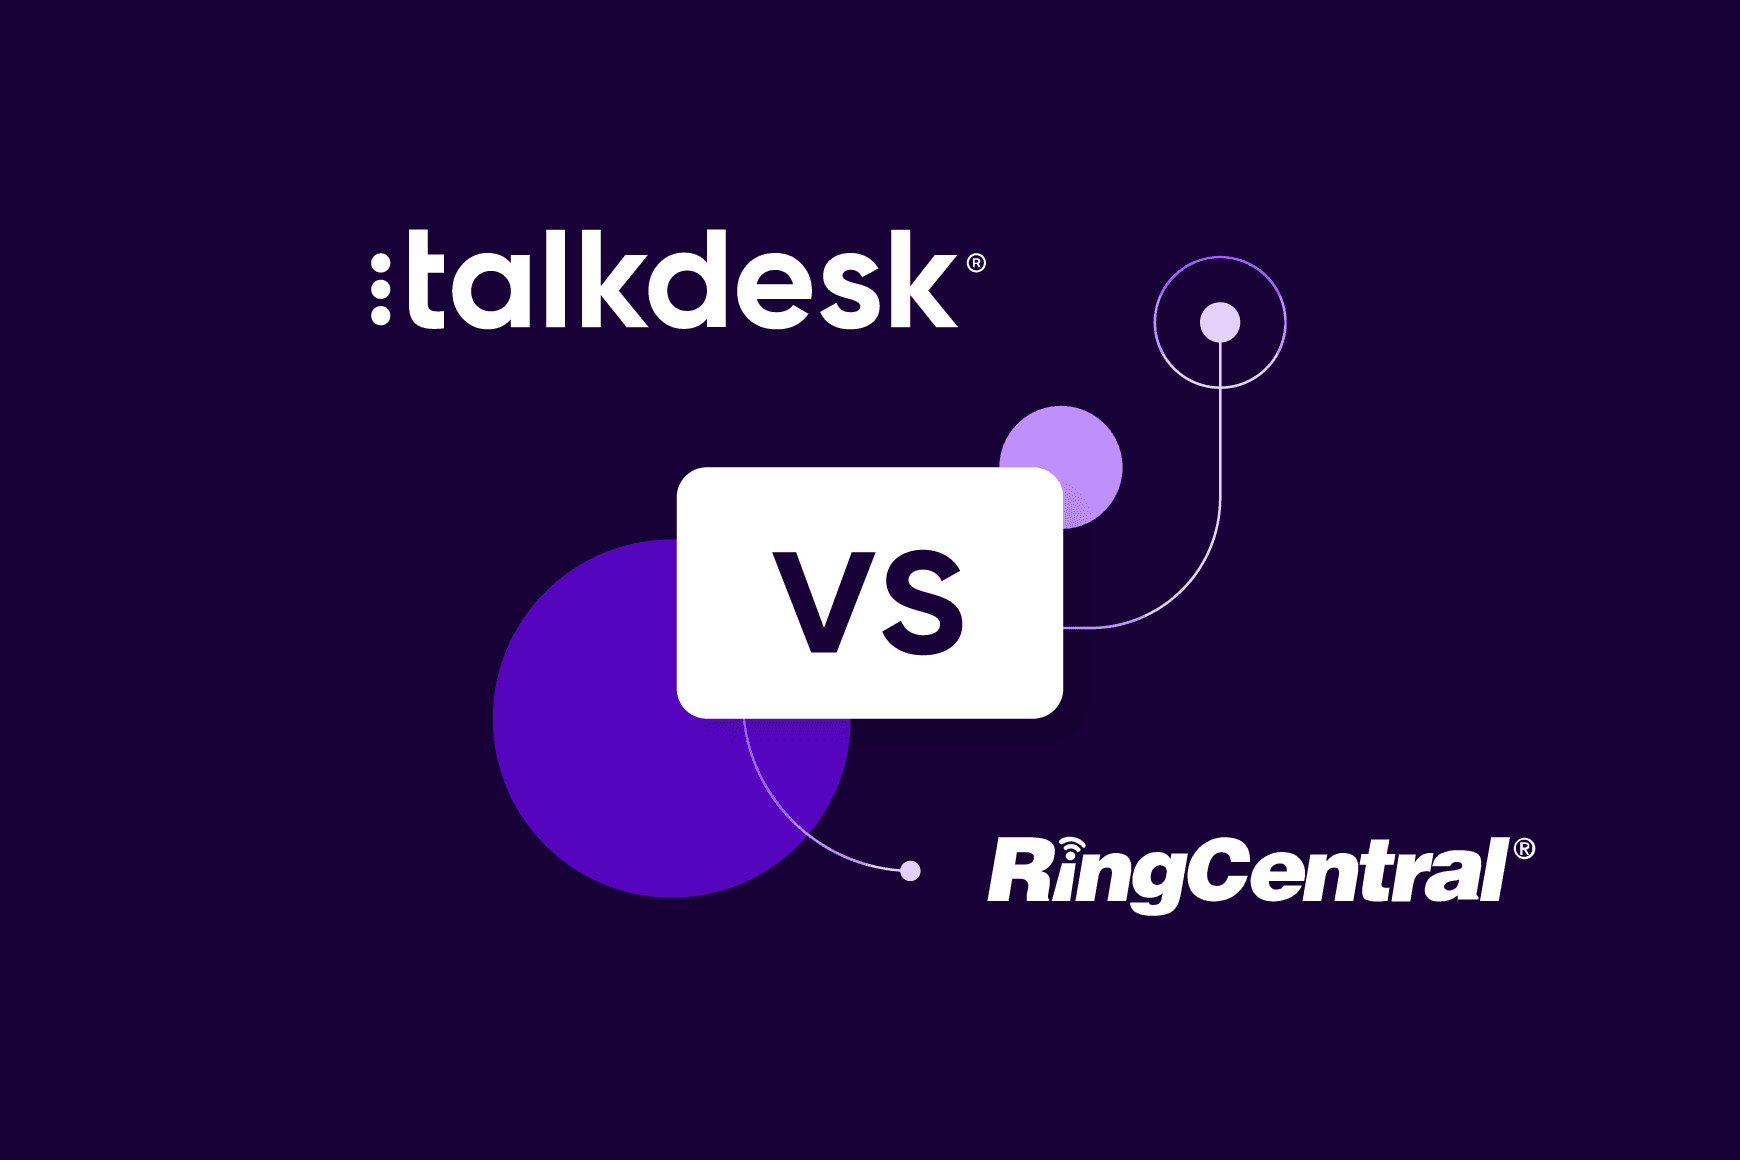 Talkdesk vs. RingCentral